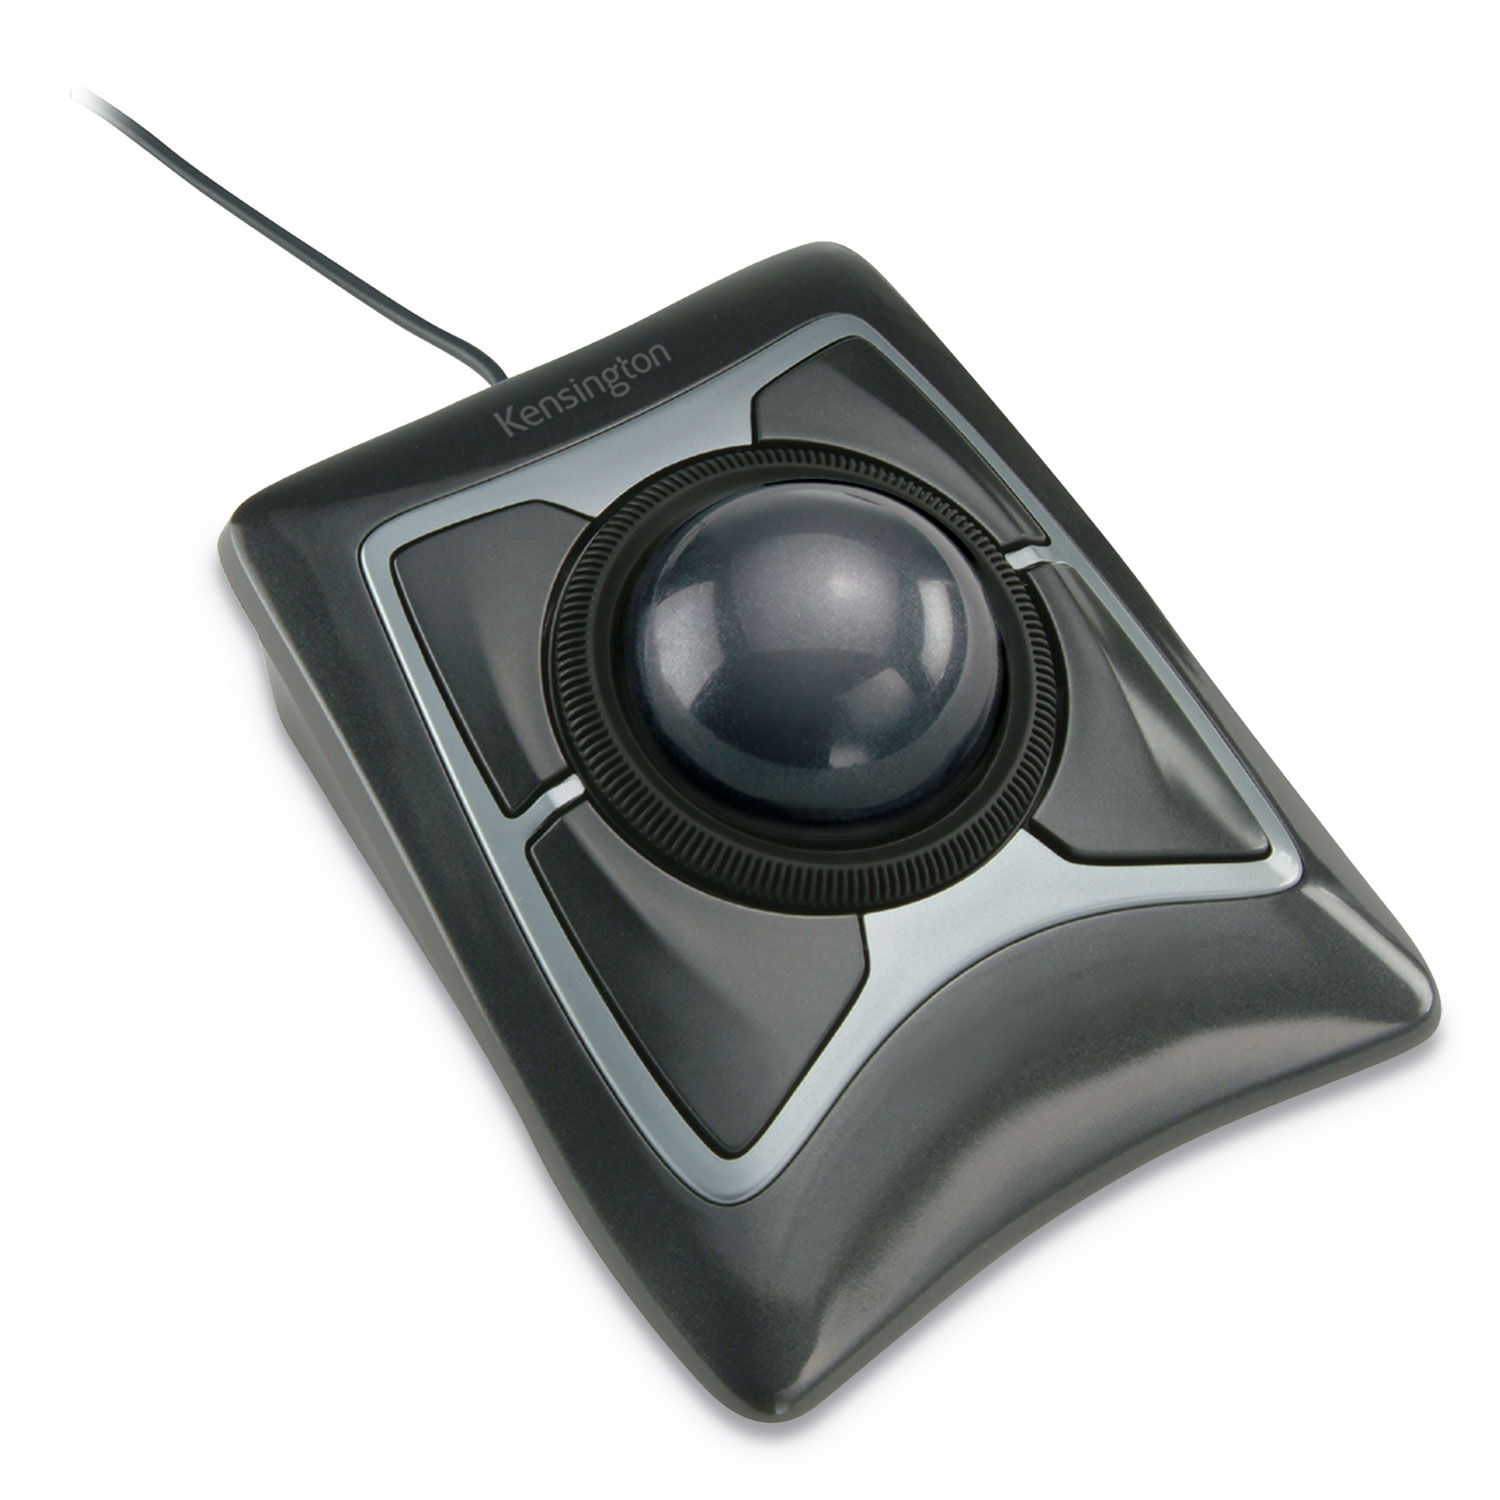  Kensington K64325 Expert Mouse Trackball, USB 2.0, Left/Right Hand Use, Black/Silver (KMW64325) 